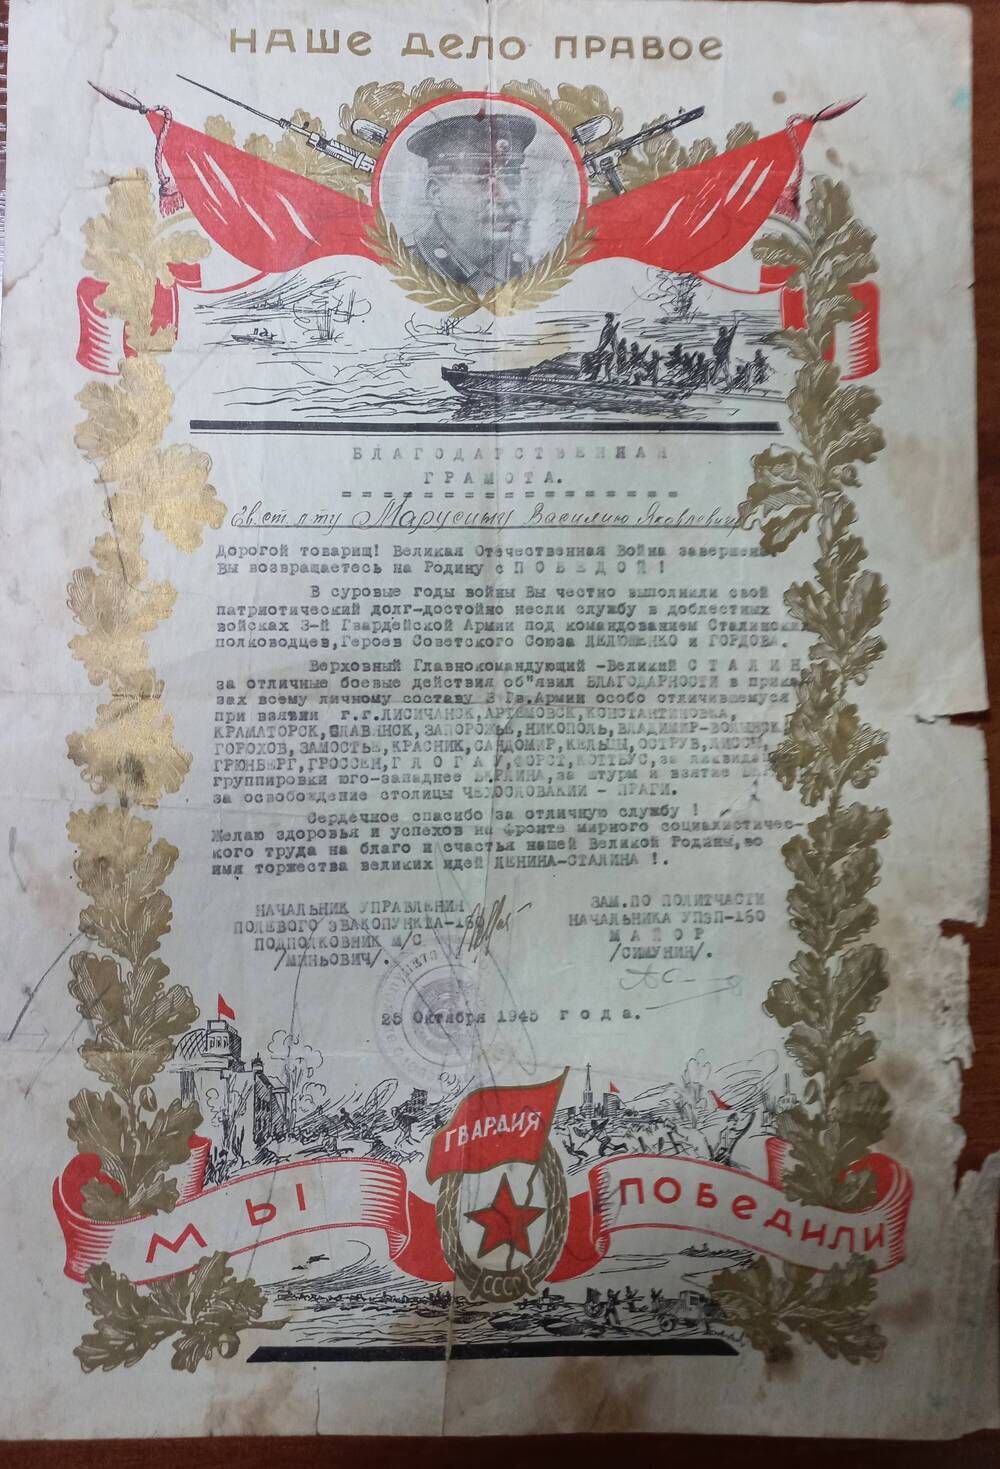 Благодарственная грамота Марусину В.Я. от 25.10.1945 г.